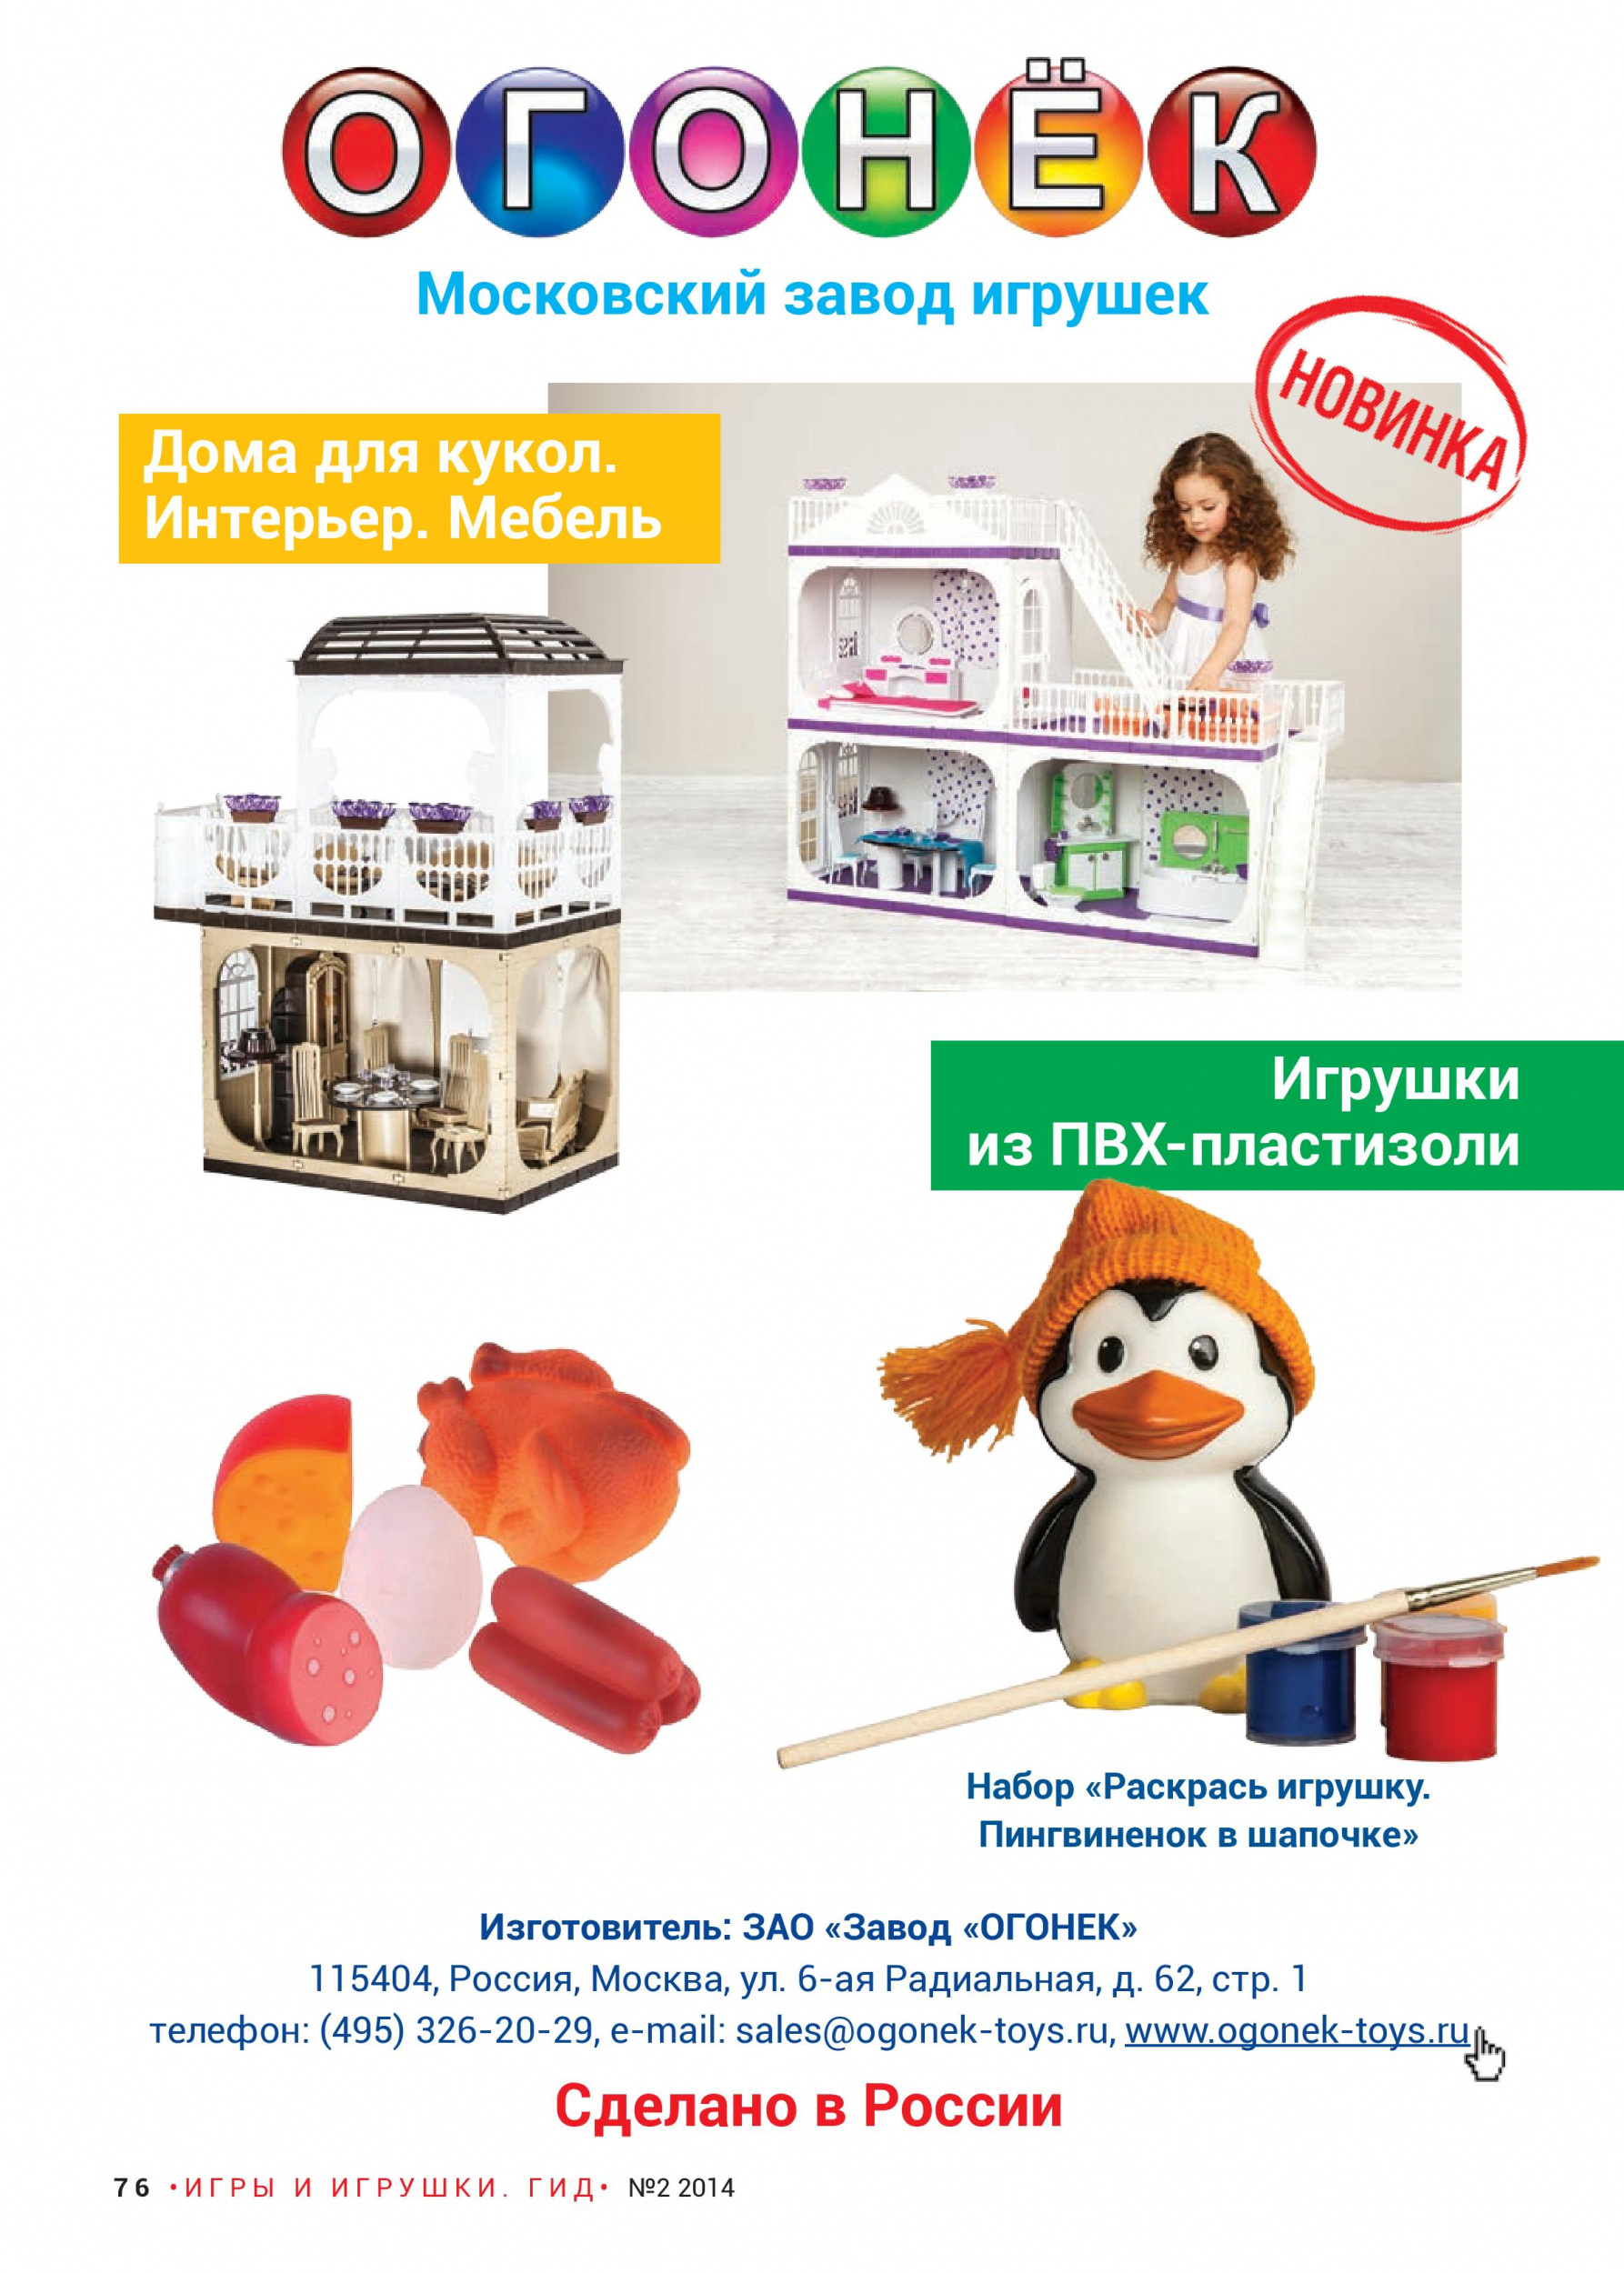 Московский завод игрушек